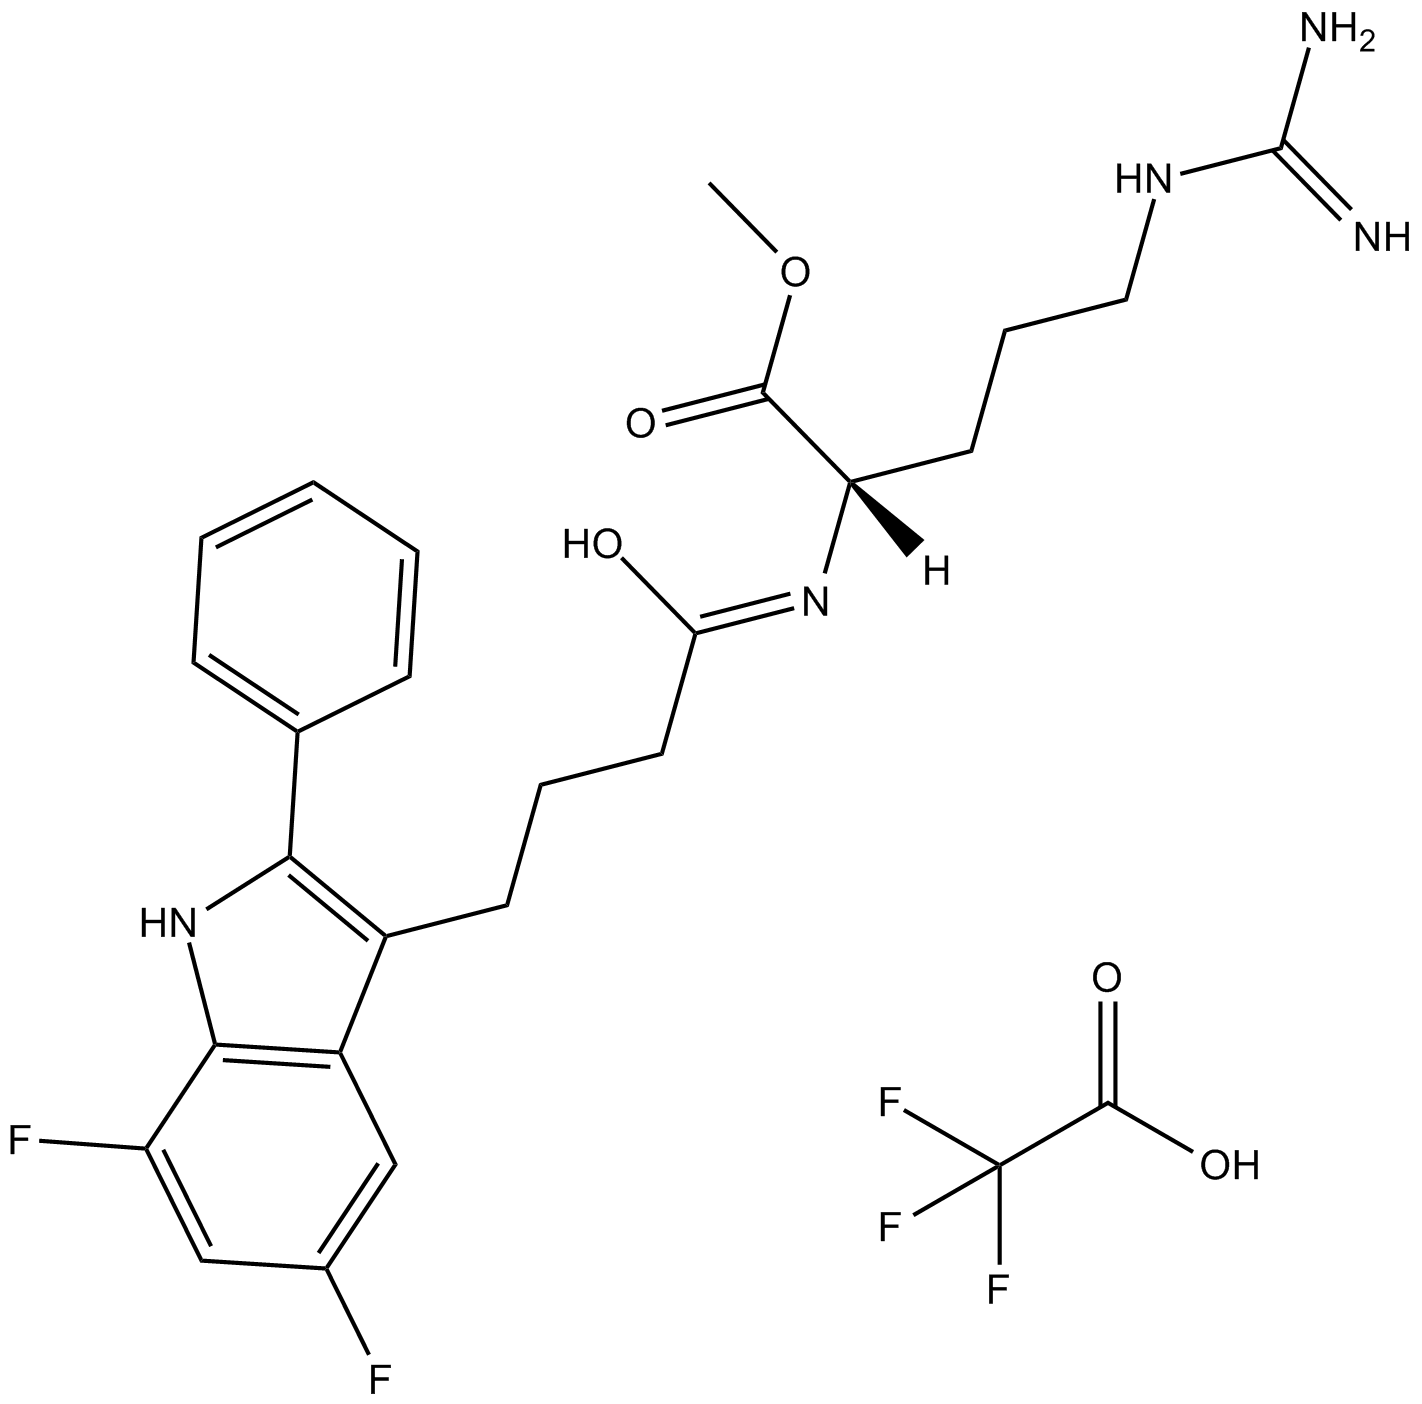 L-803,087 trifluoroacetate